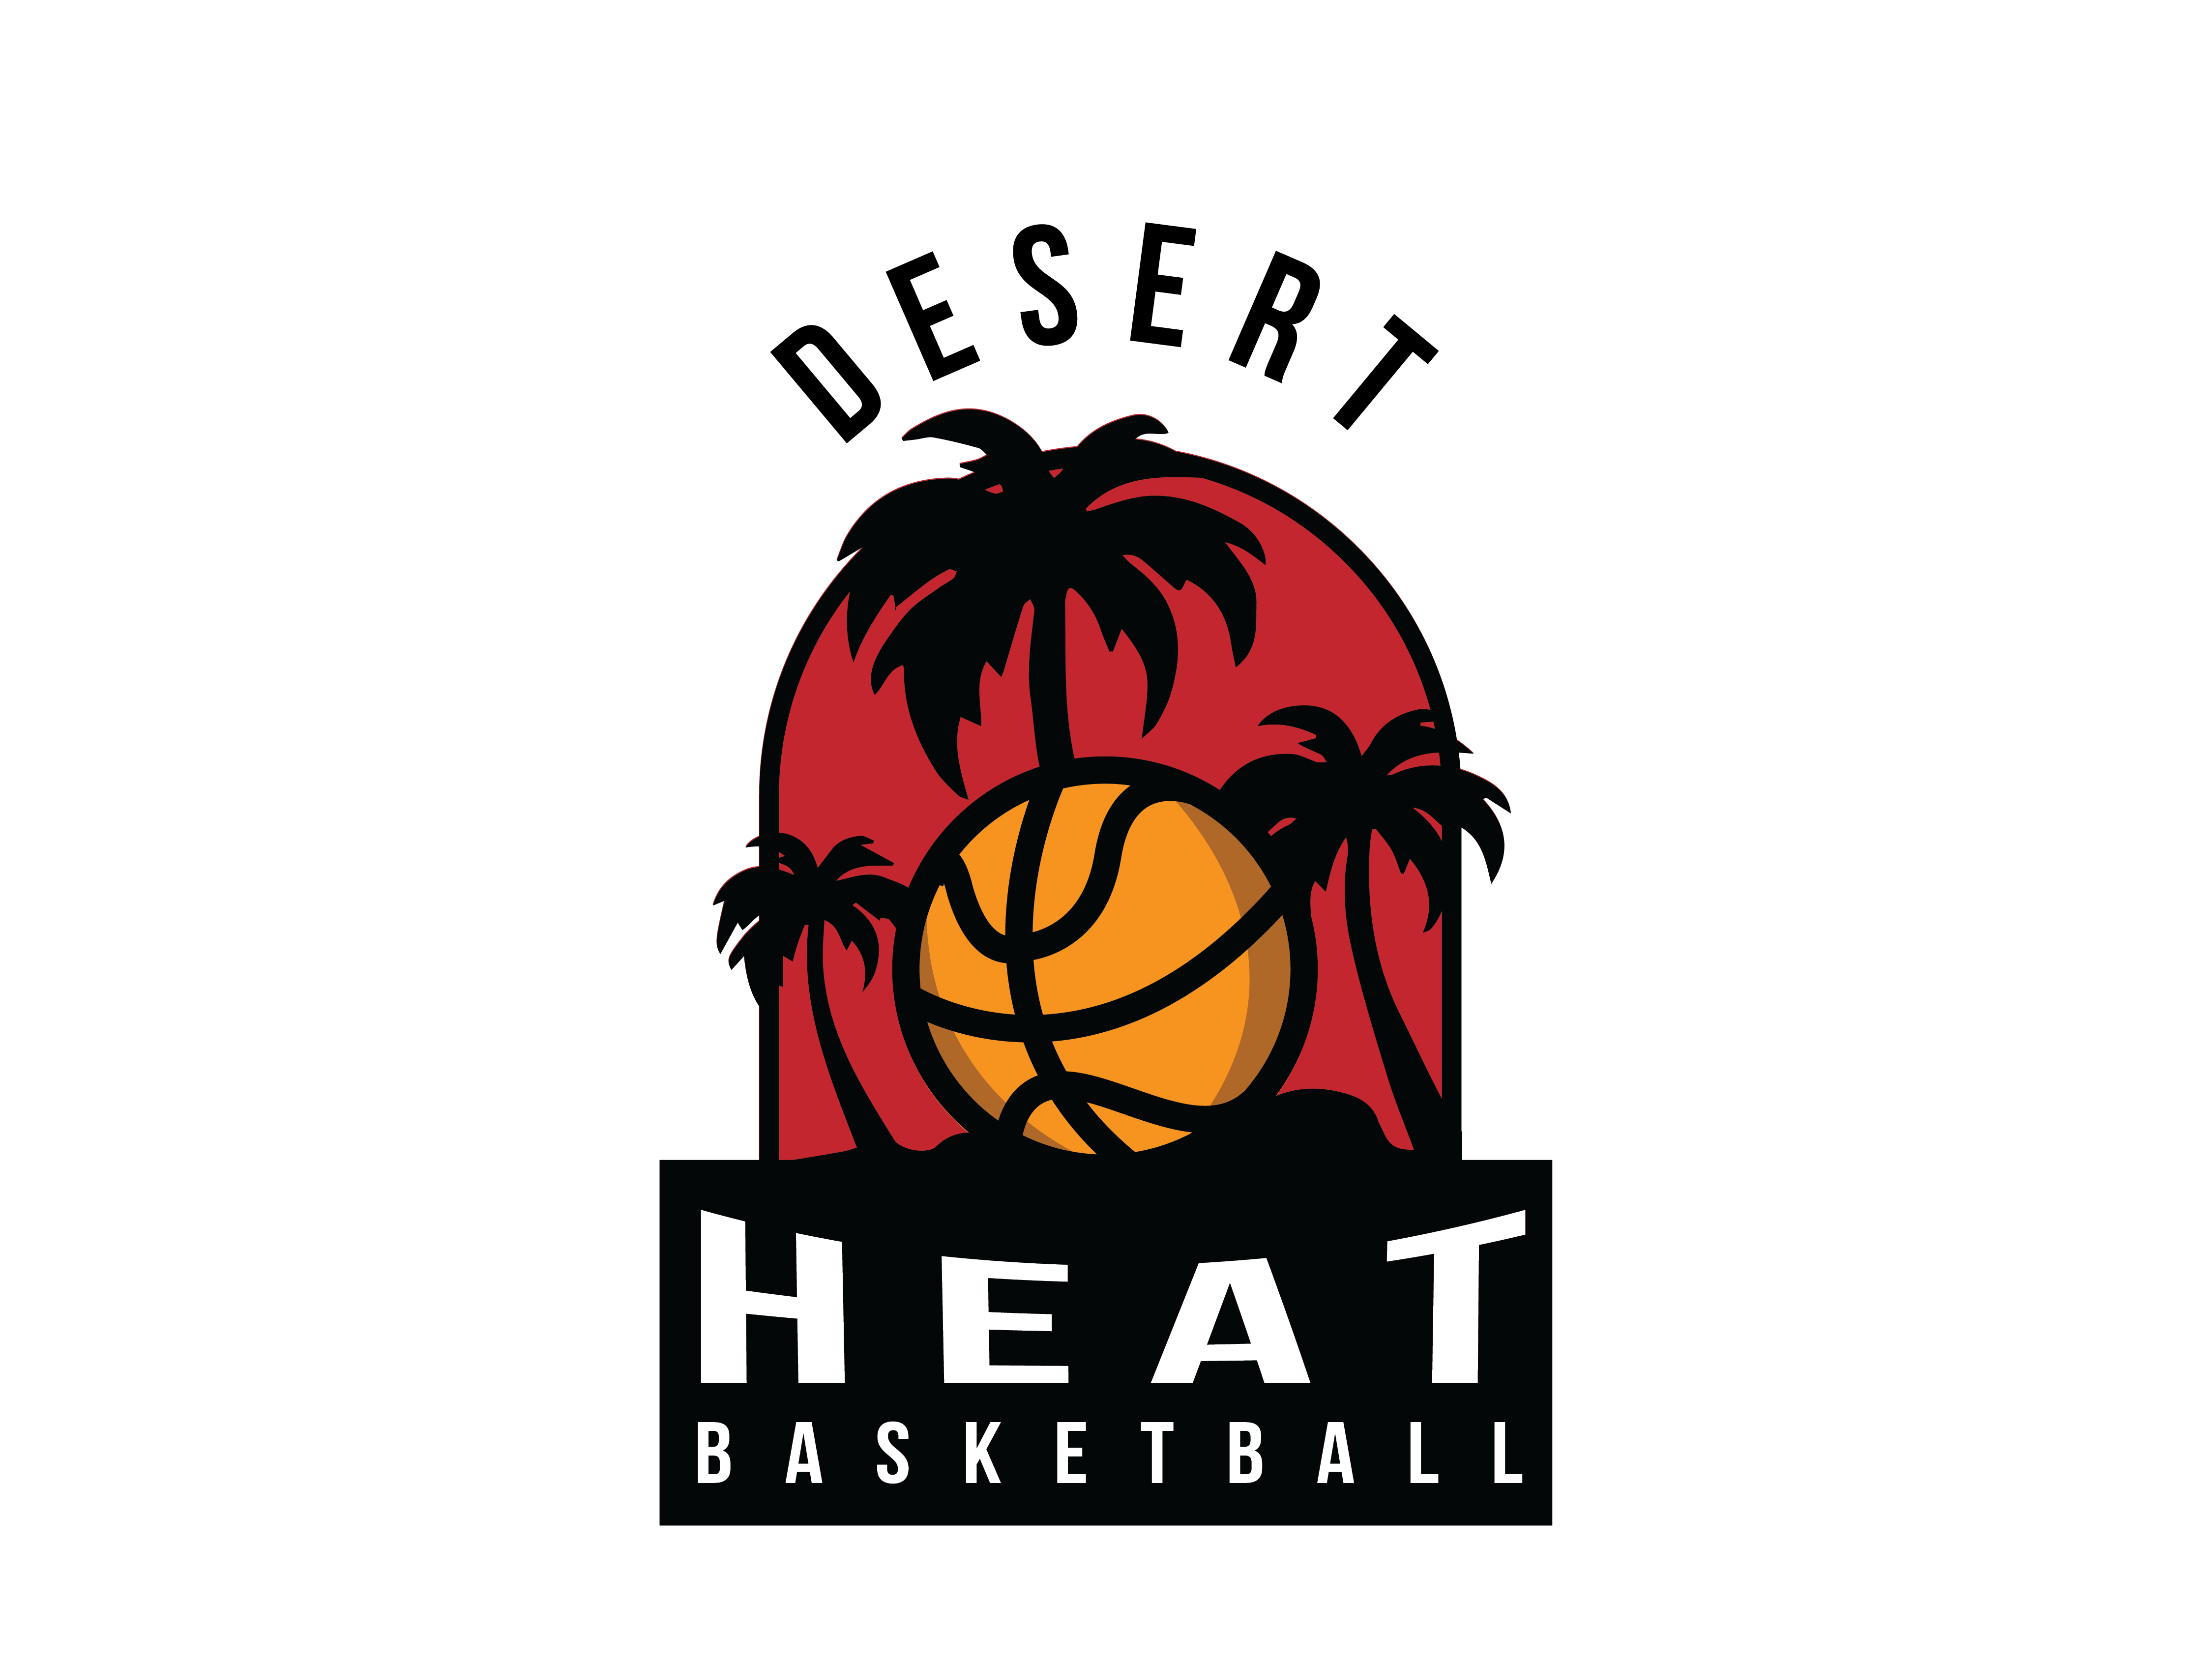 Sert Logo - Desert Heat Logo by Lionhearted Studio on Dribbble